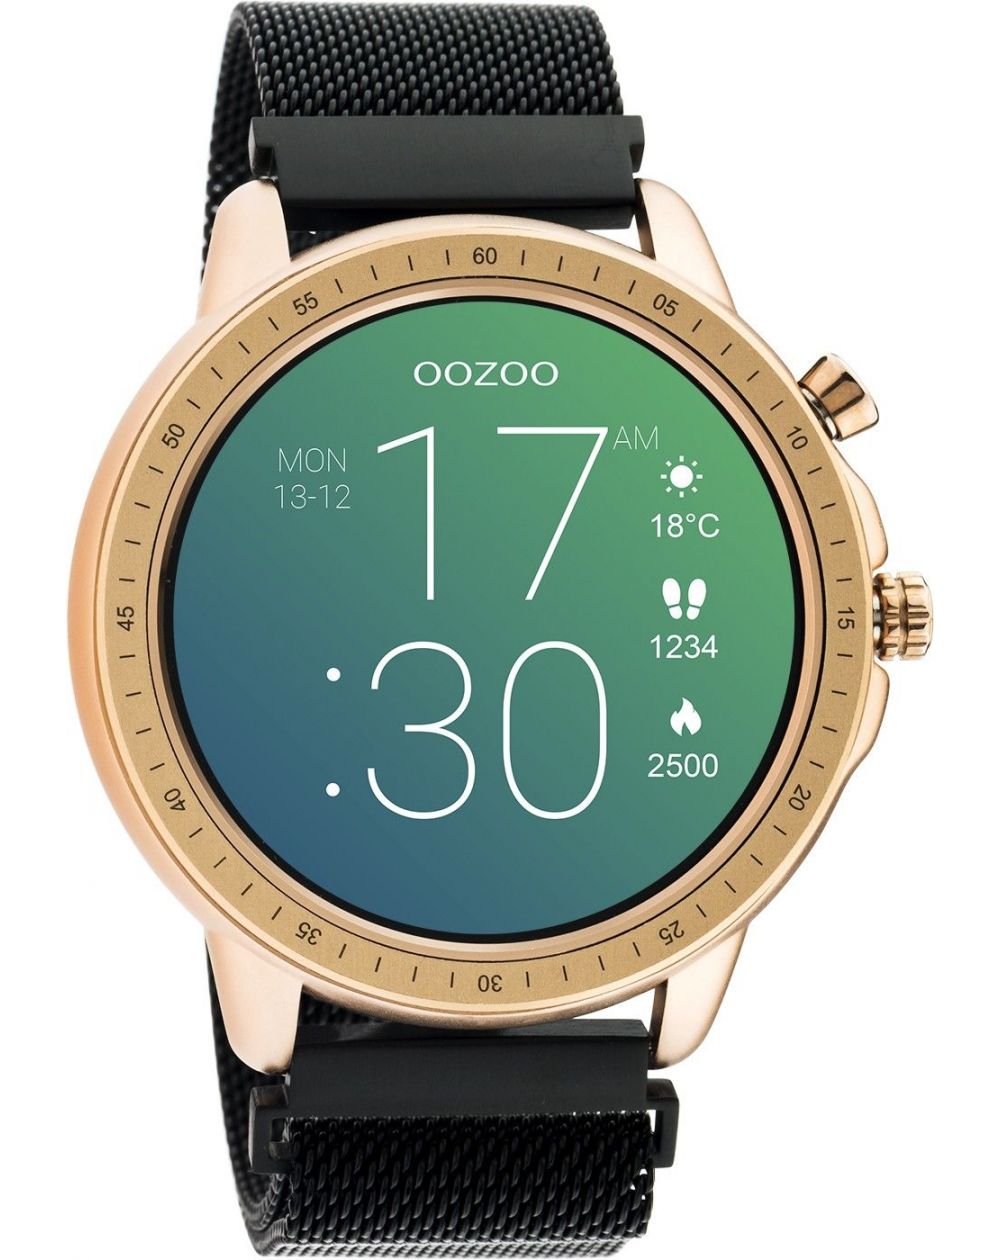 Montre Oozoo Q00308 - Smartwatch - Marque OOZOO - Livraison gratuite